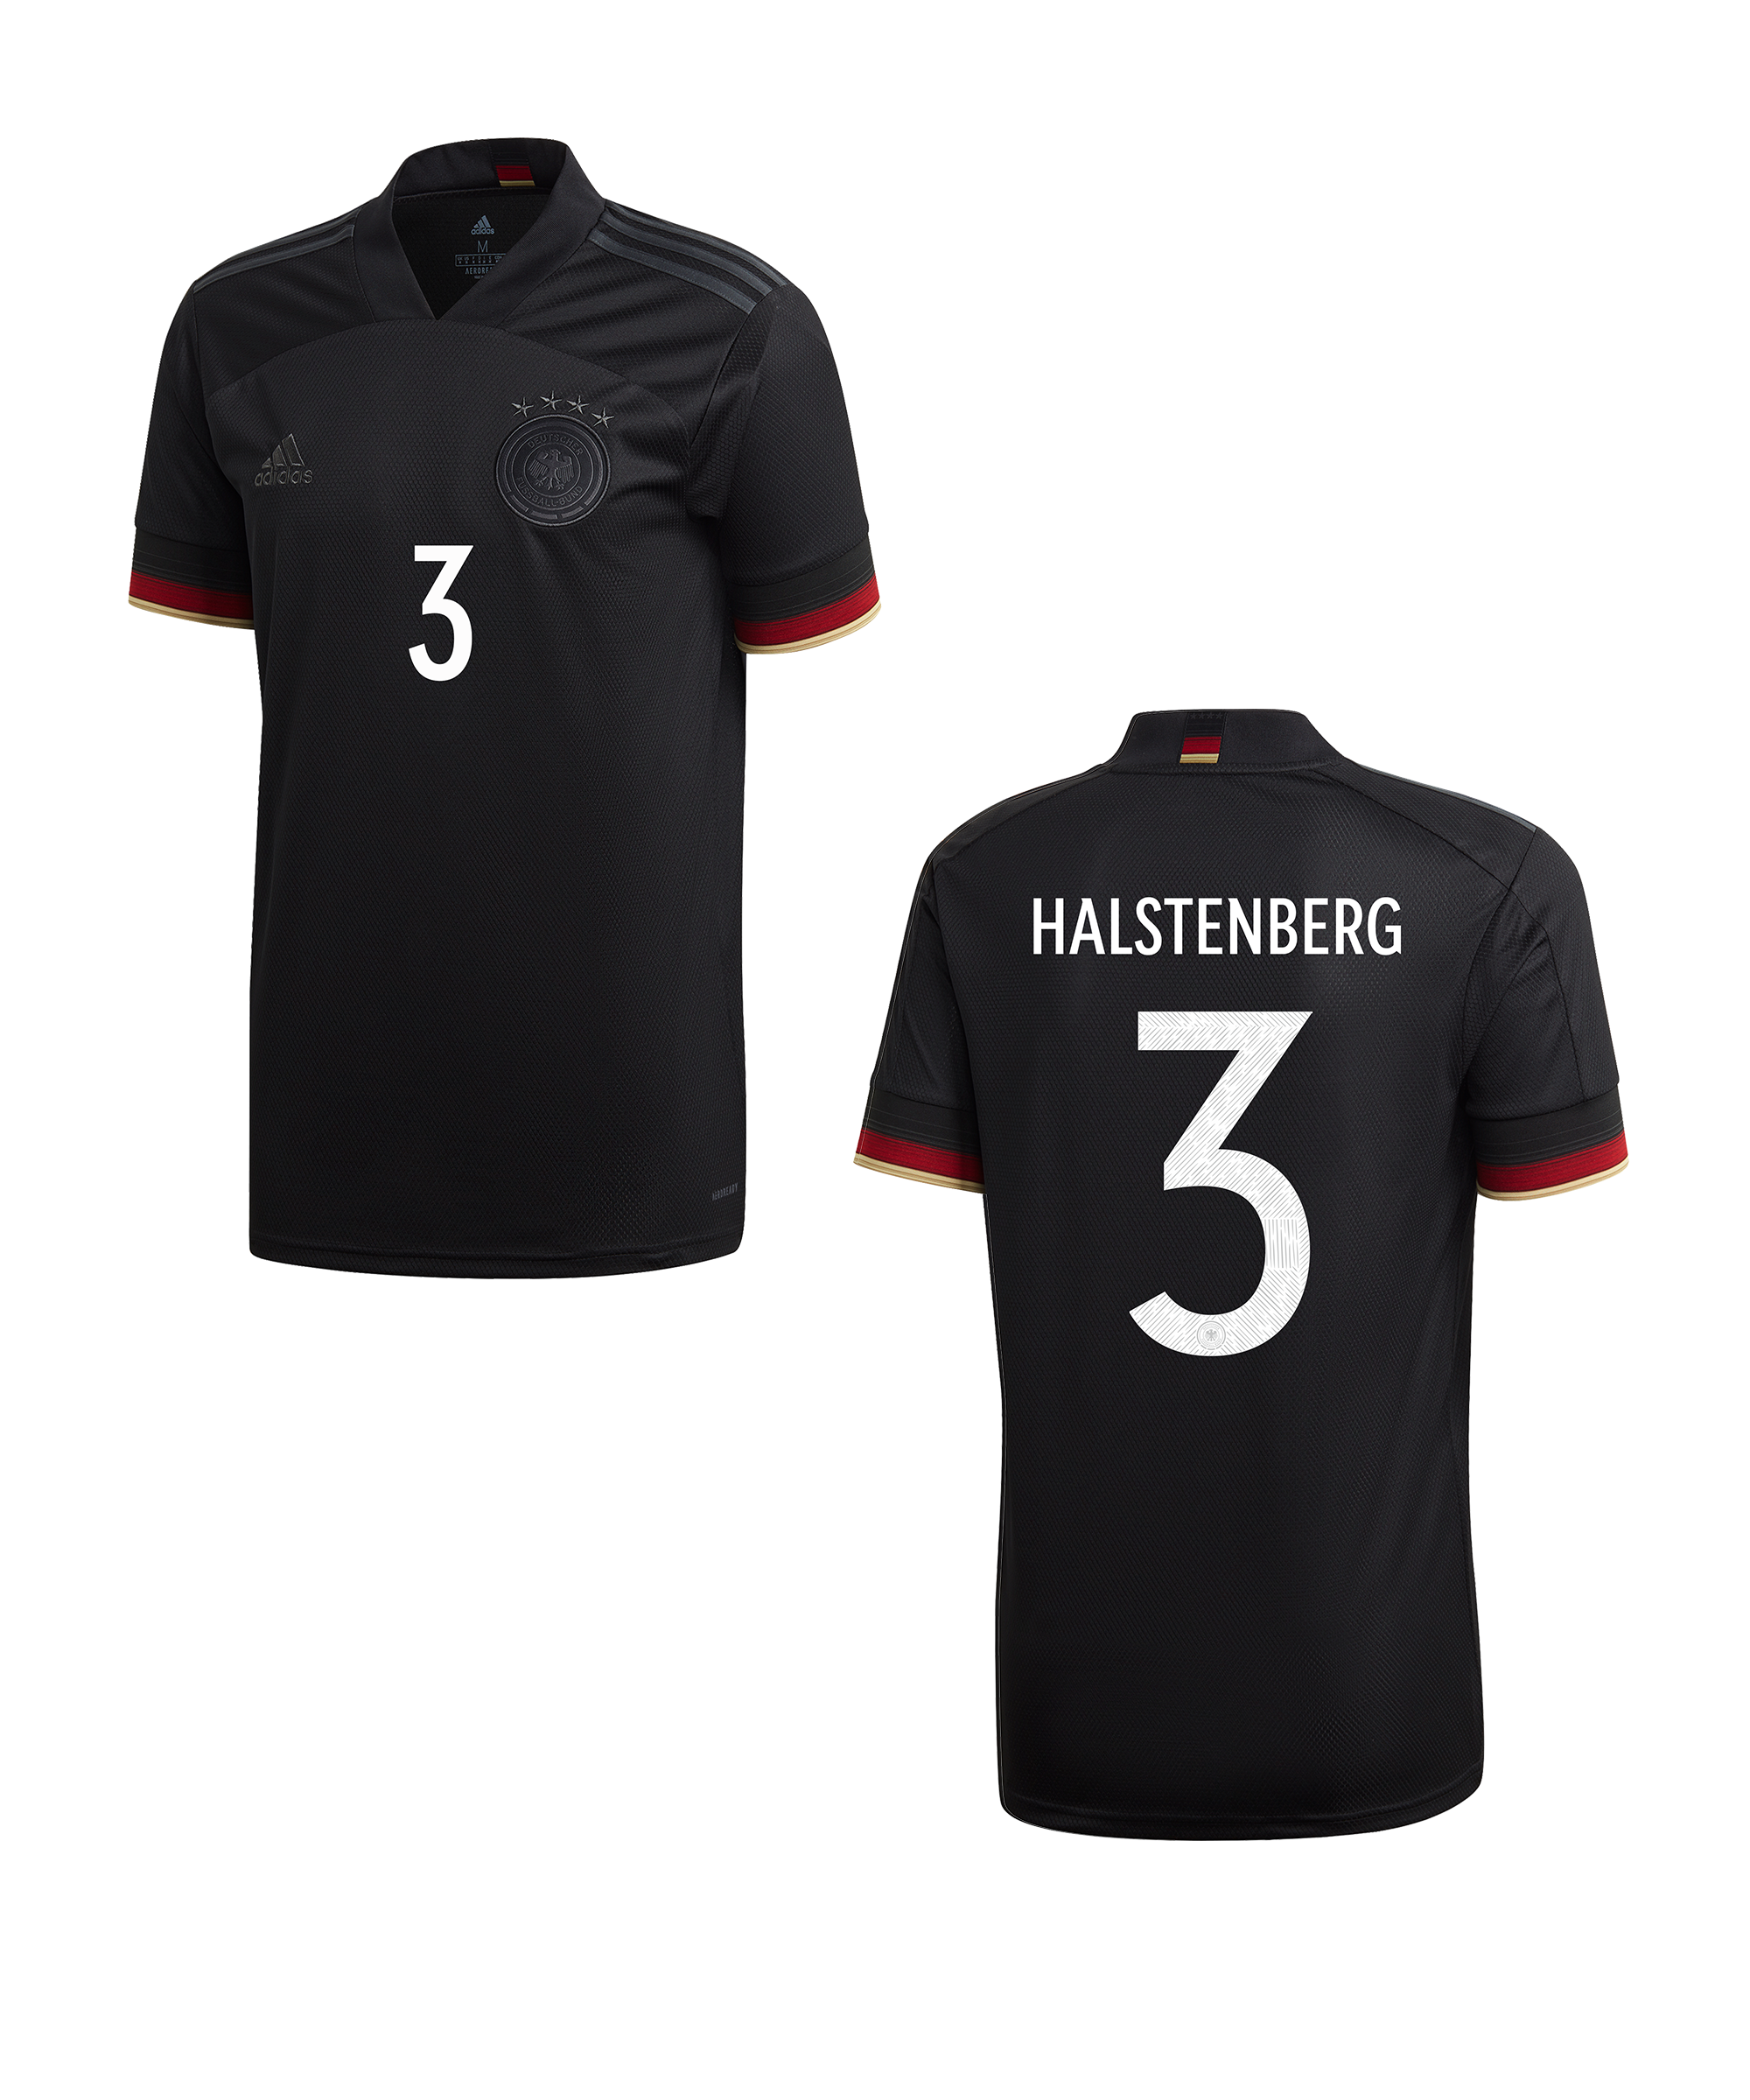 Bluza adidas DFB Deutschland t Away EM2020 Halstenberg